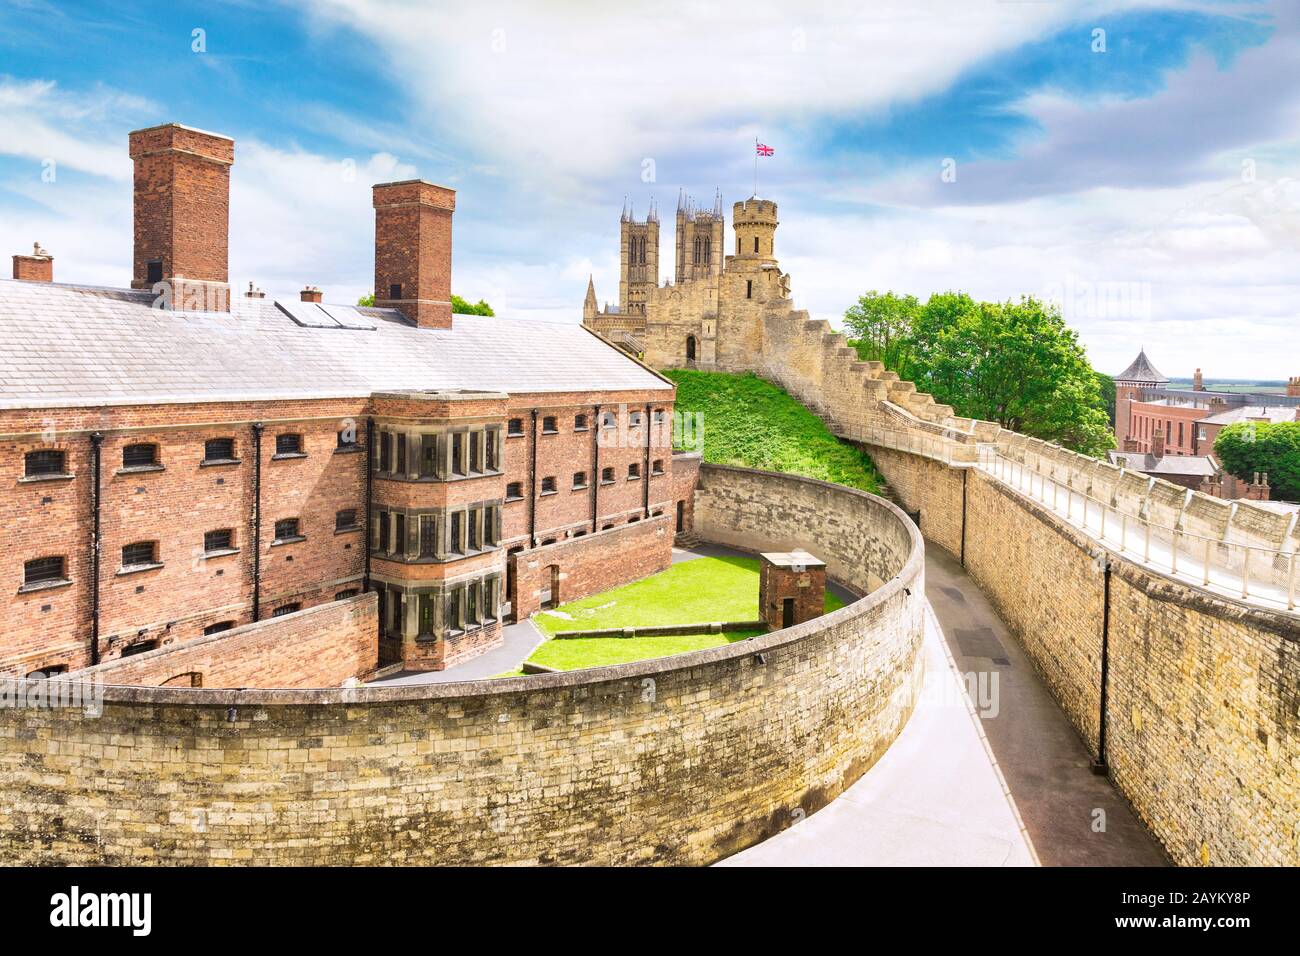 2 luglio 2019: Lincoln, Regno Unito - la vecchia prigione, ora un'attrazione turistica, dalle mura del castello. Le torri della cattedrale possono essere viste sullo sfondo. Foto Stock